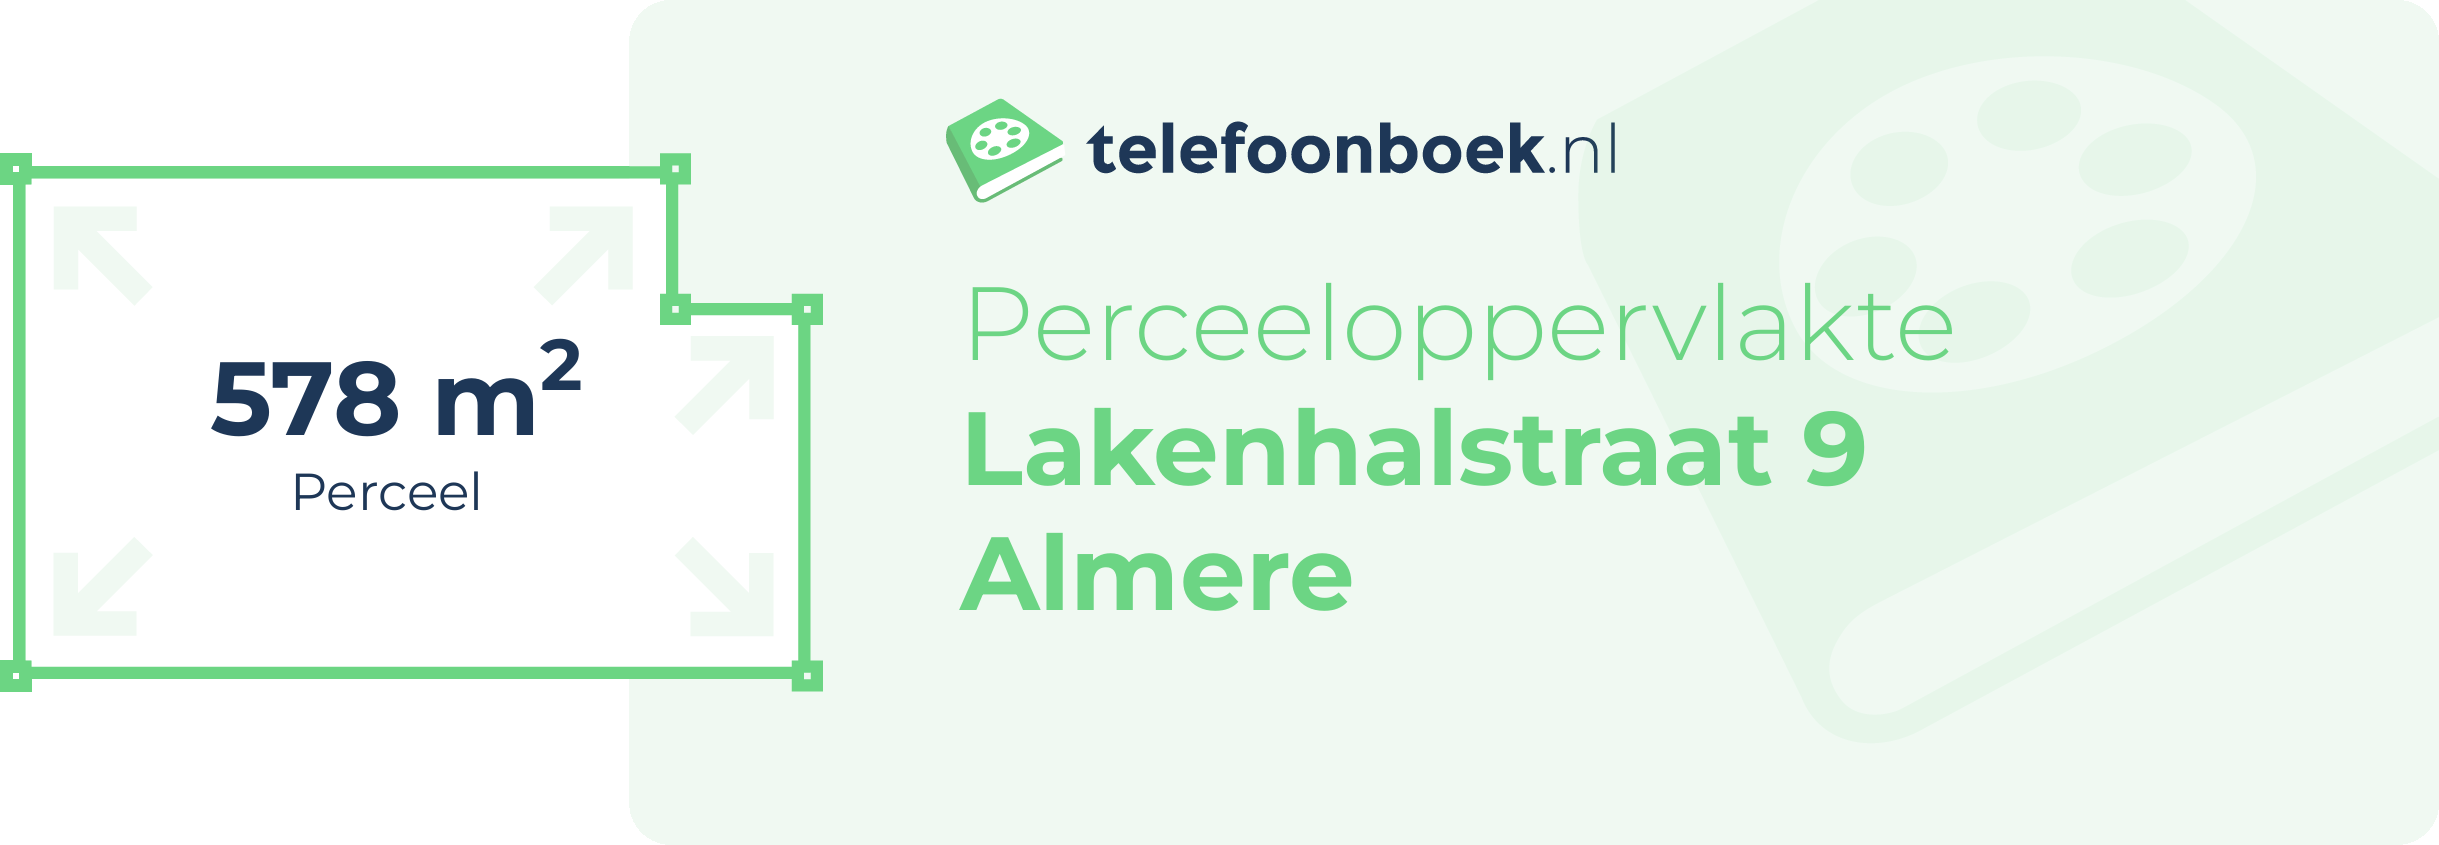 Perceeloppervlakte Lakenhalstraat 9 Almere